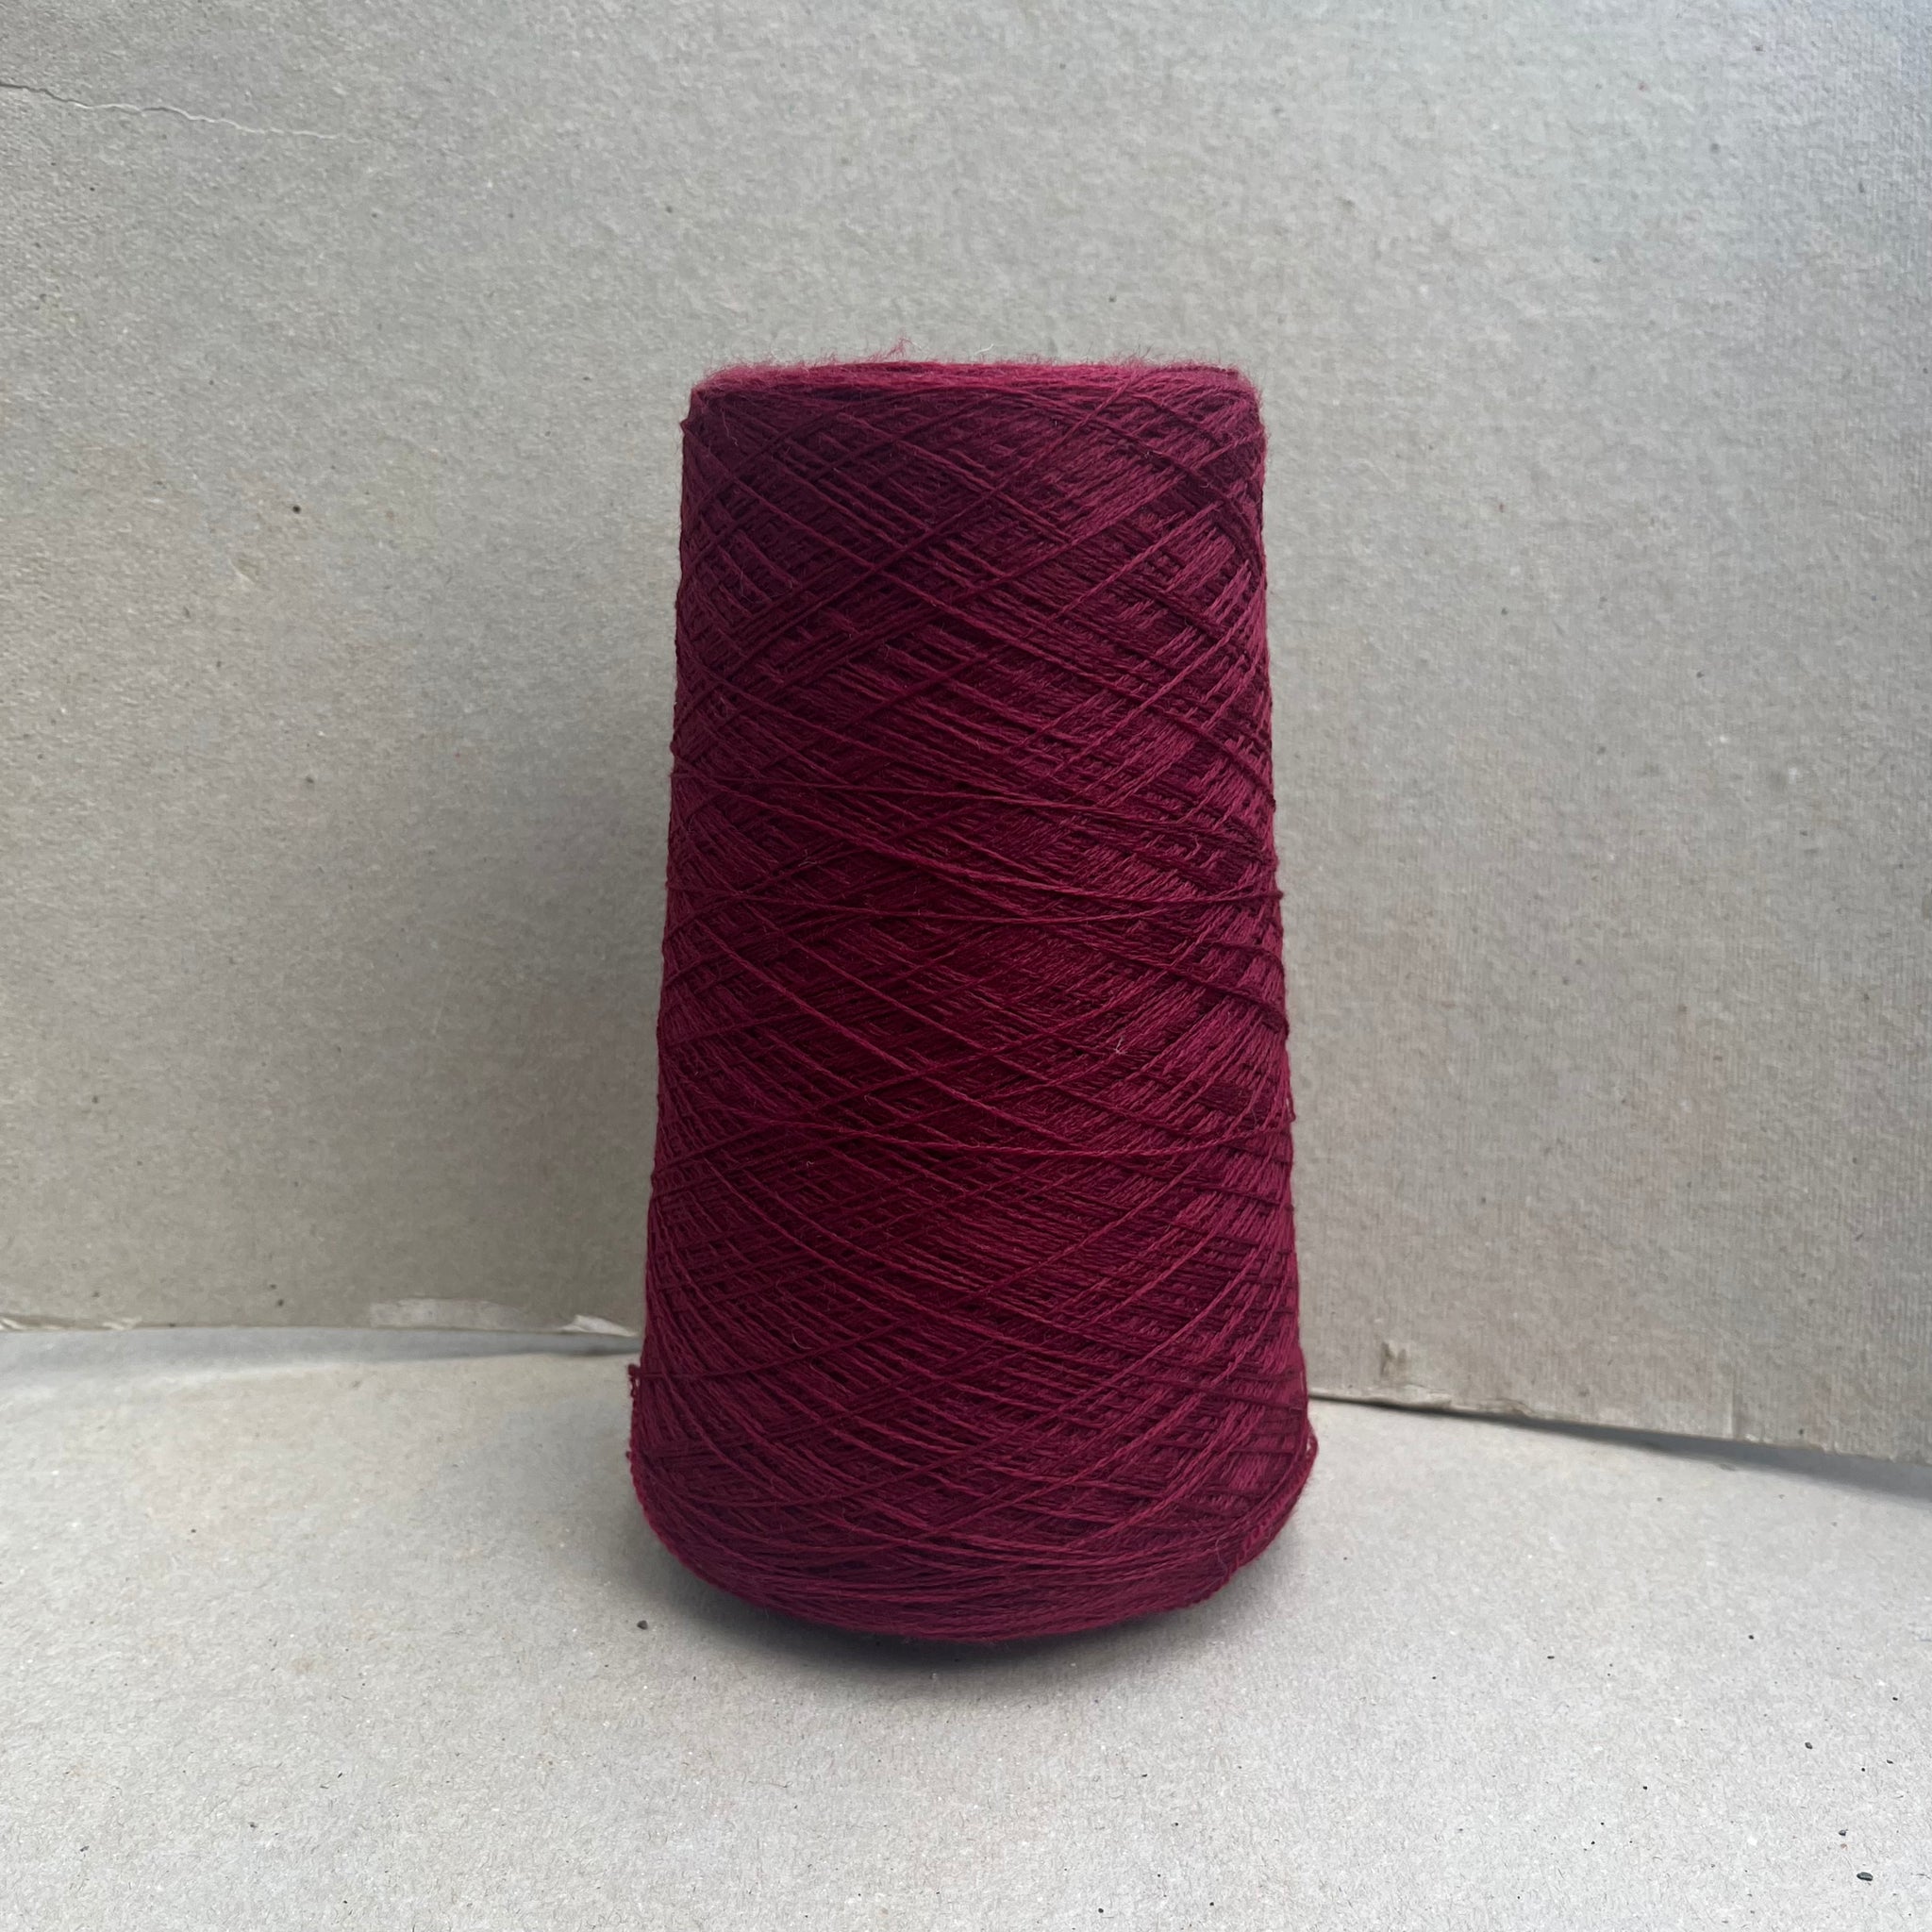 Merino Wool - Spanish Red